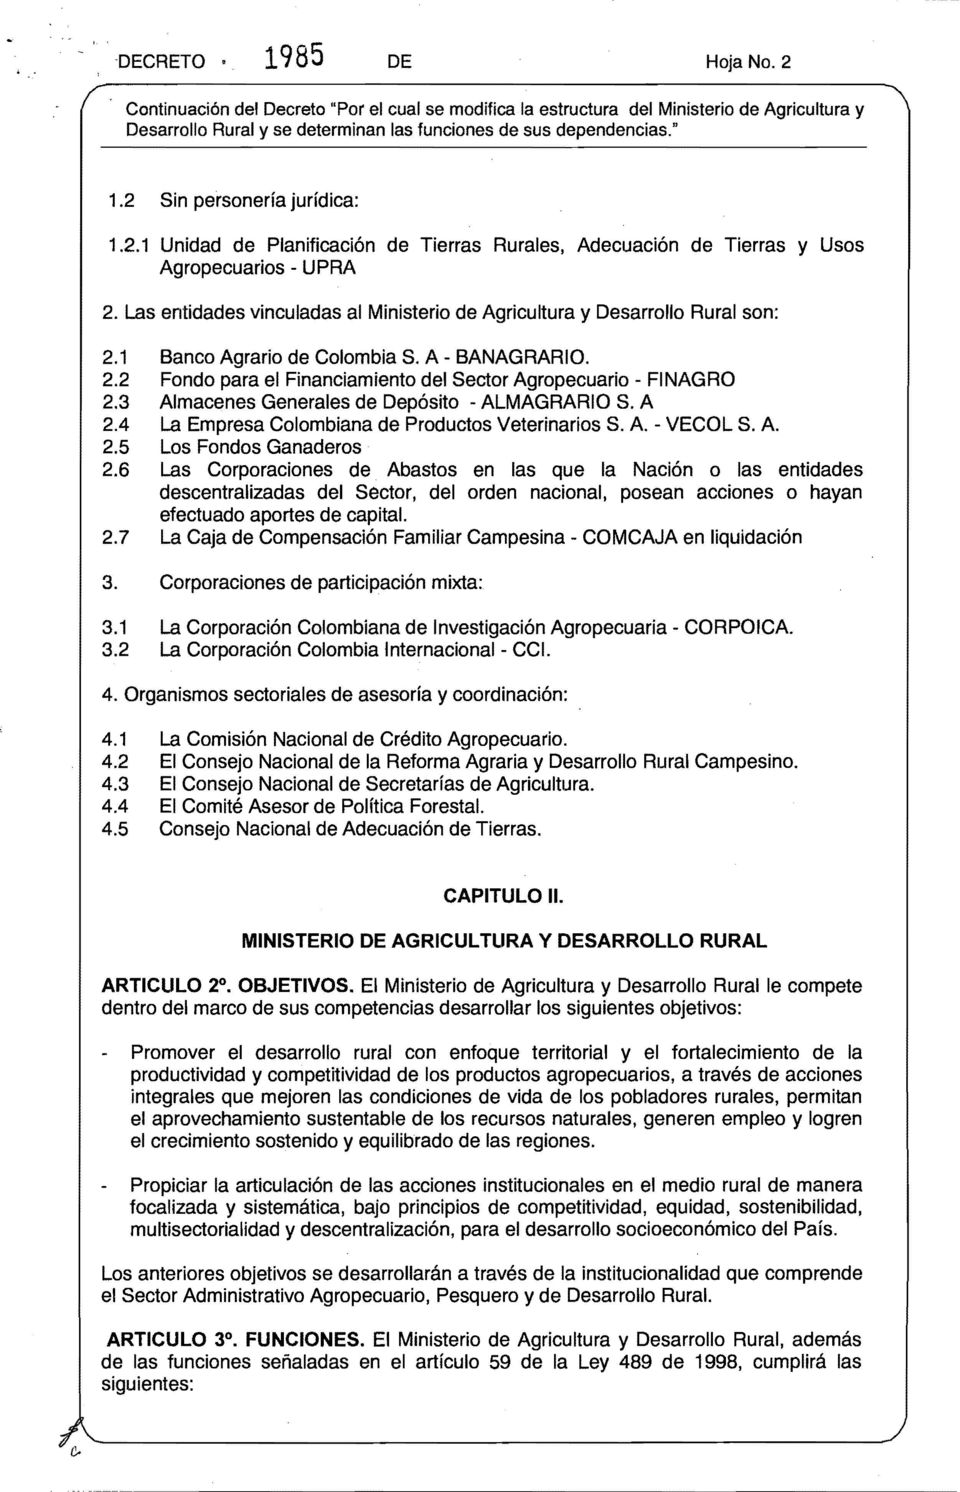 3 Almacenes Generales de Depósito - ALMAGRARIO S. A 2.4 La Empresa Colombiana de Productos Veterinarios S. A. - VECOL S. A. 2.5 Los Fondos Ganaderos 2.